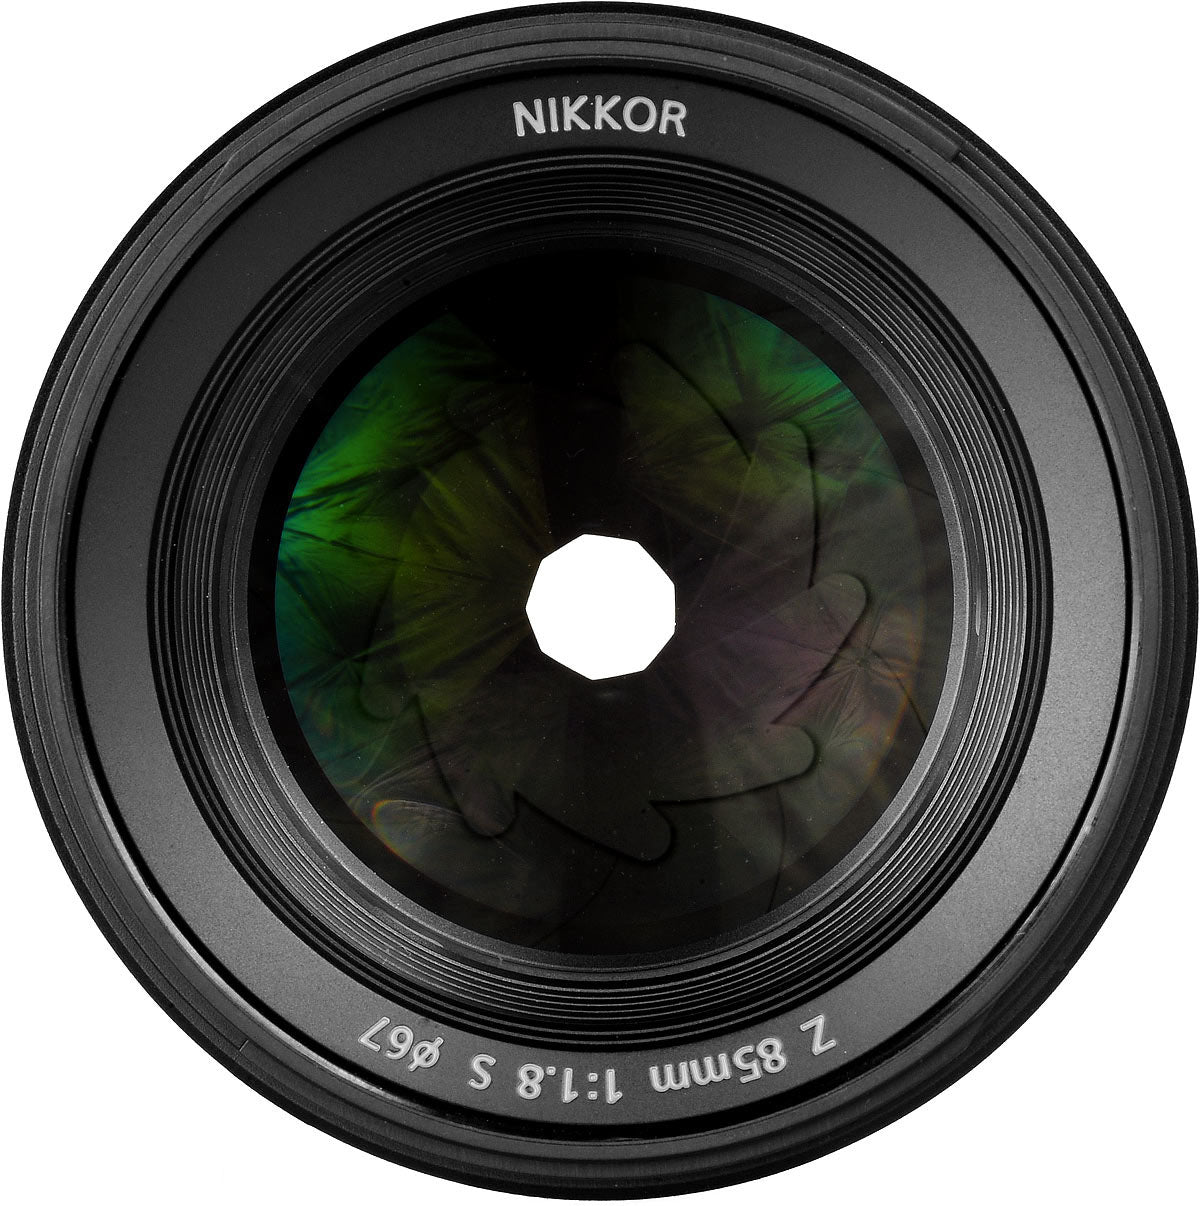 Nikon NIKKOR Z 85mm f/1.8 S Prime Lens (20090) Intl Model Bundle + 64GB SD Card